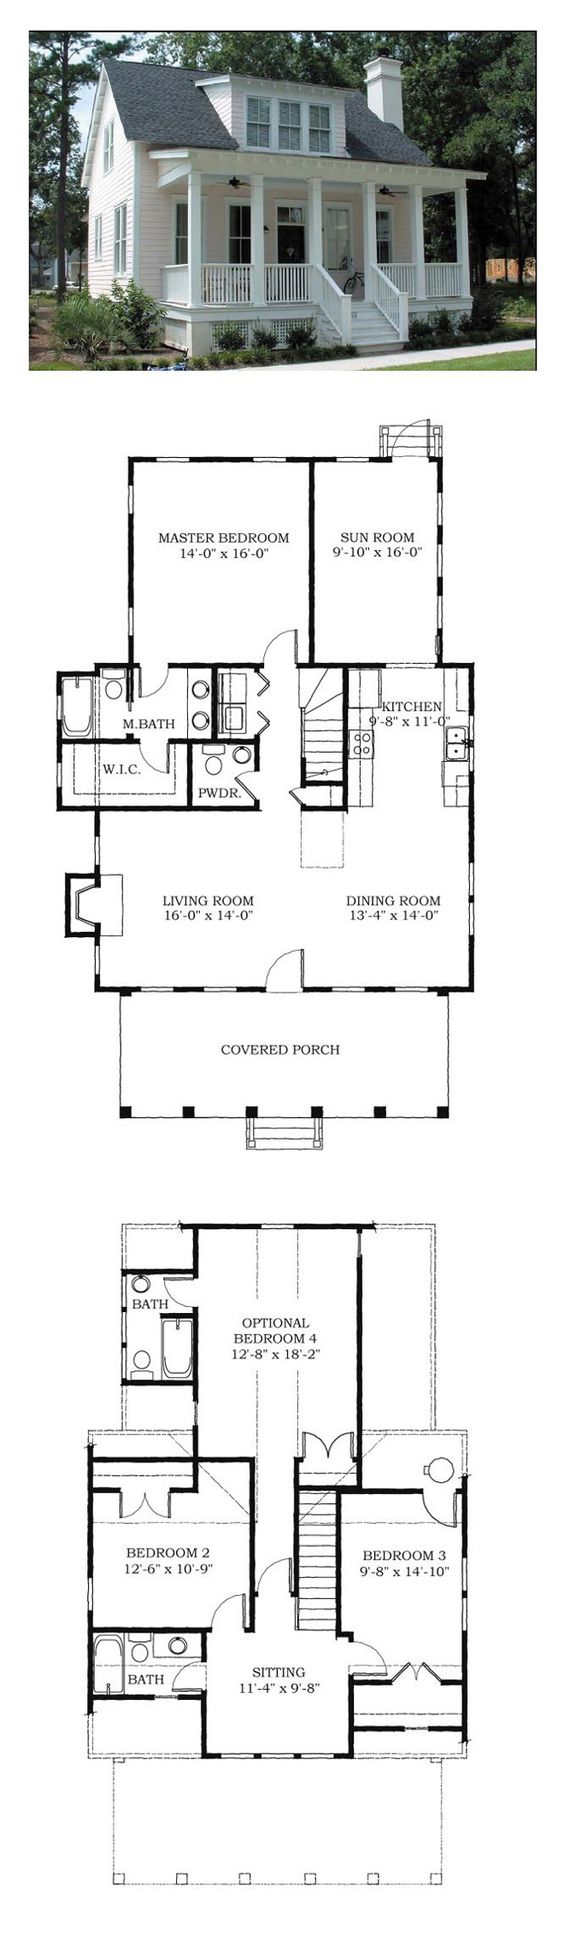 Cottage floor plans via Cool House Plans